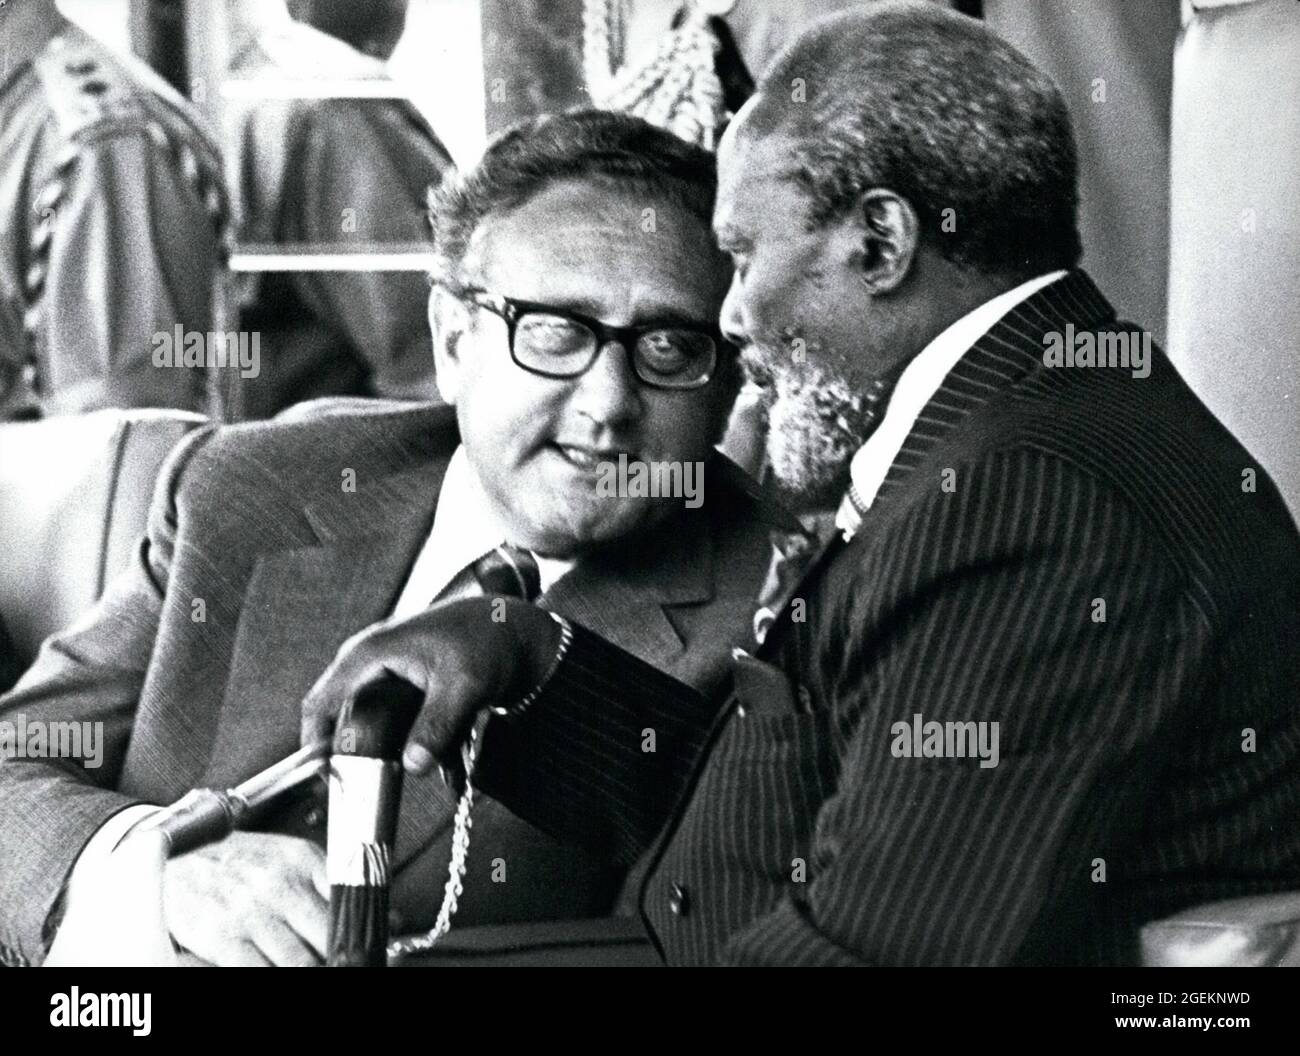 Aprile 1976 - Nairobi, Kenya - il presidente JOMO KENYATTA, a destra, pacemaker straordinario, ha incontrato il segretario di Stato americano HENRY KISSINGER, a sinistra. Kissinger è arrivato per la prima volta in Kenya per un'accoglienza cordiale presso la residenza di lavoro più amata del Kenyatta, la state House, Nakuru. Dopo 40 minuti di seria discussione sui problemi che affliggono l'Africa australe, i due K sono emersi dalla loro conferenza privata alle celebrazioni colorate che includevano la famosa danza di guerra Masai e altre danze tradizionali di diverse tribù del Kenya. Credit: Keystone Press Agency/ZUMA Wire/Alamy Live News Foto Stock